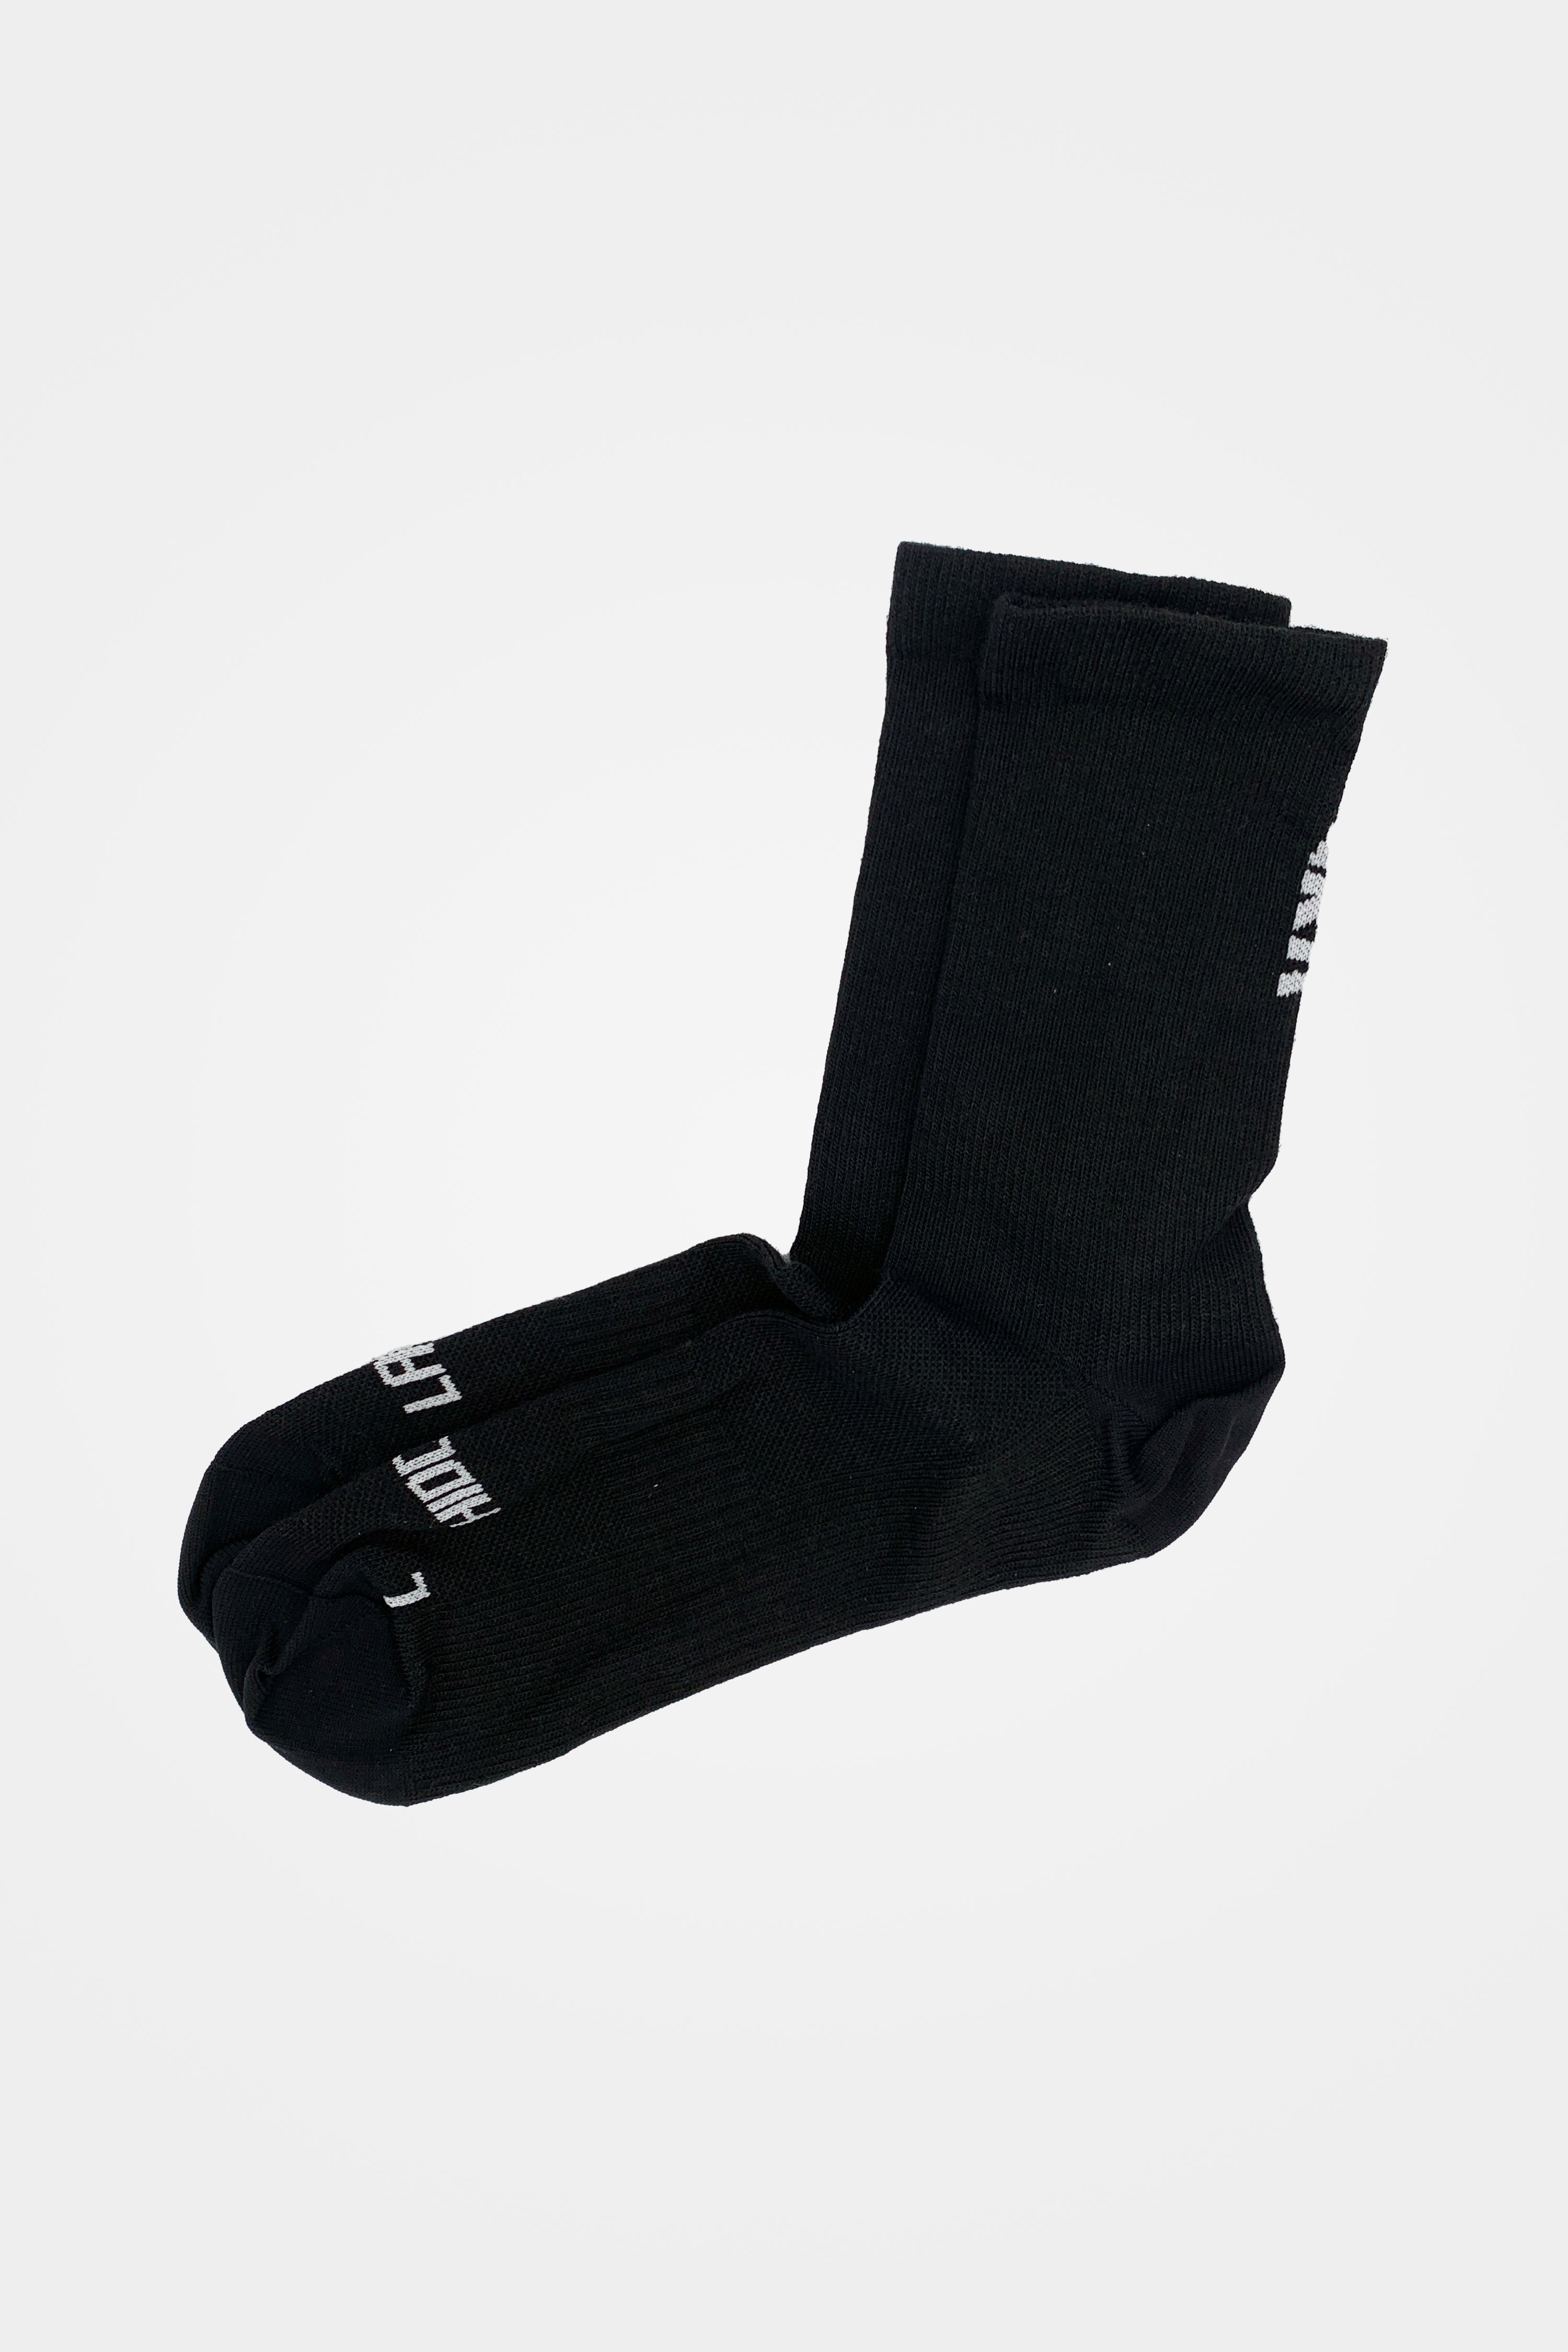 Merino Performance Socks MID Black